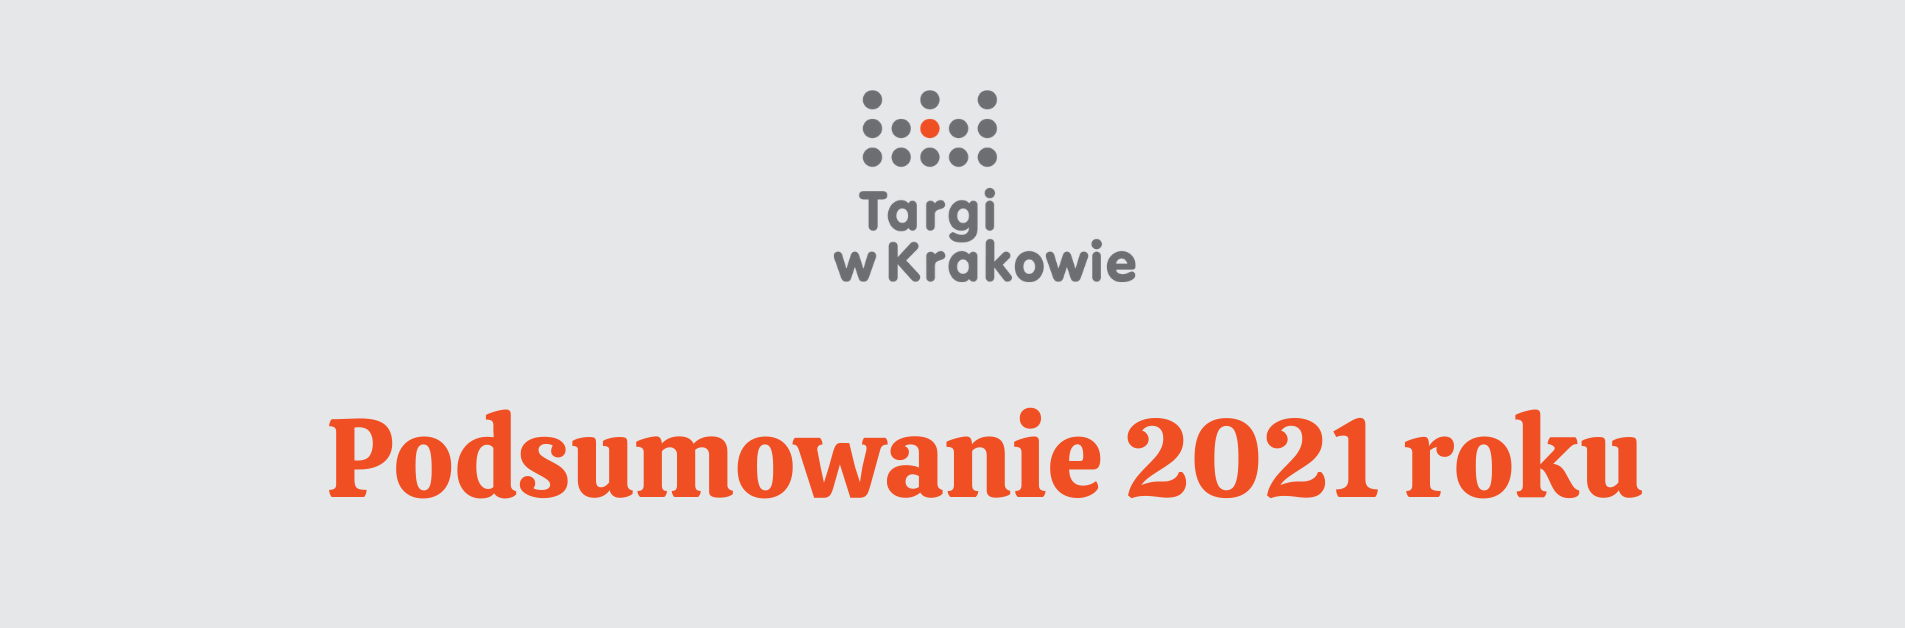 Targi w Krakowie podsumowują mijający rok